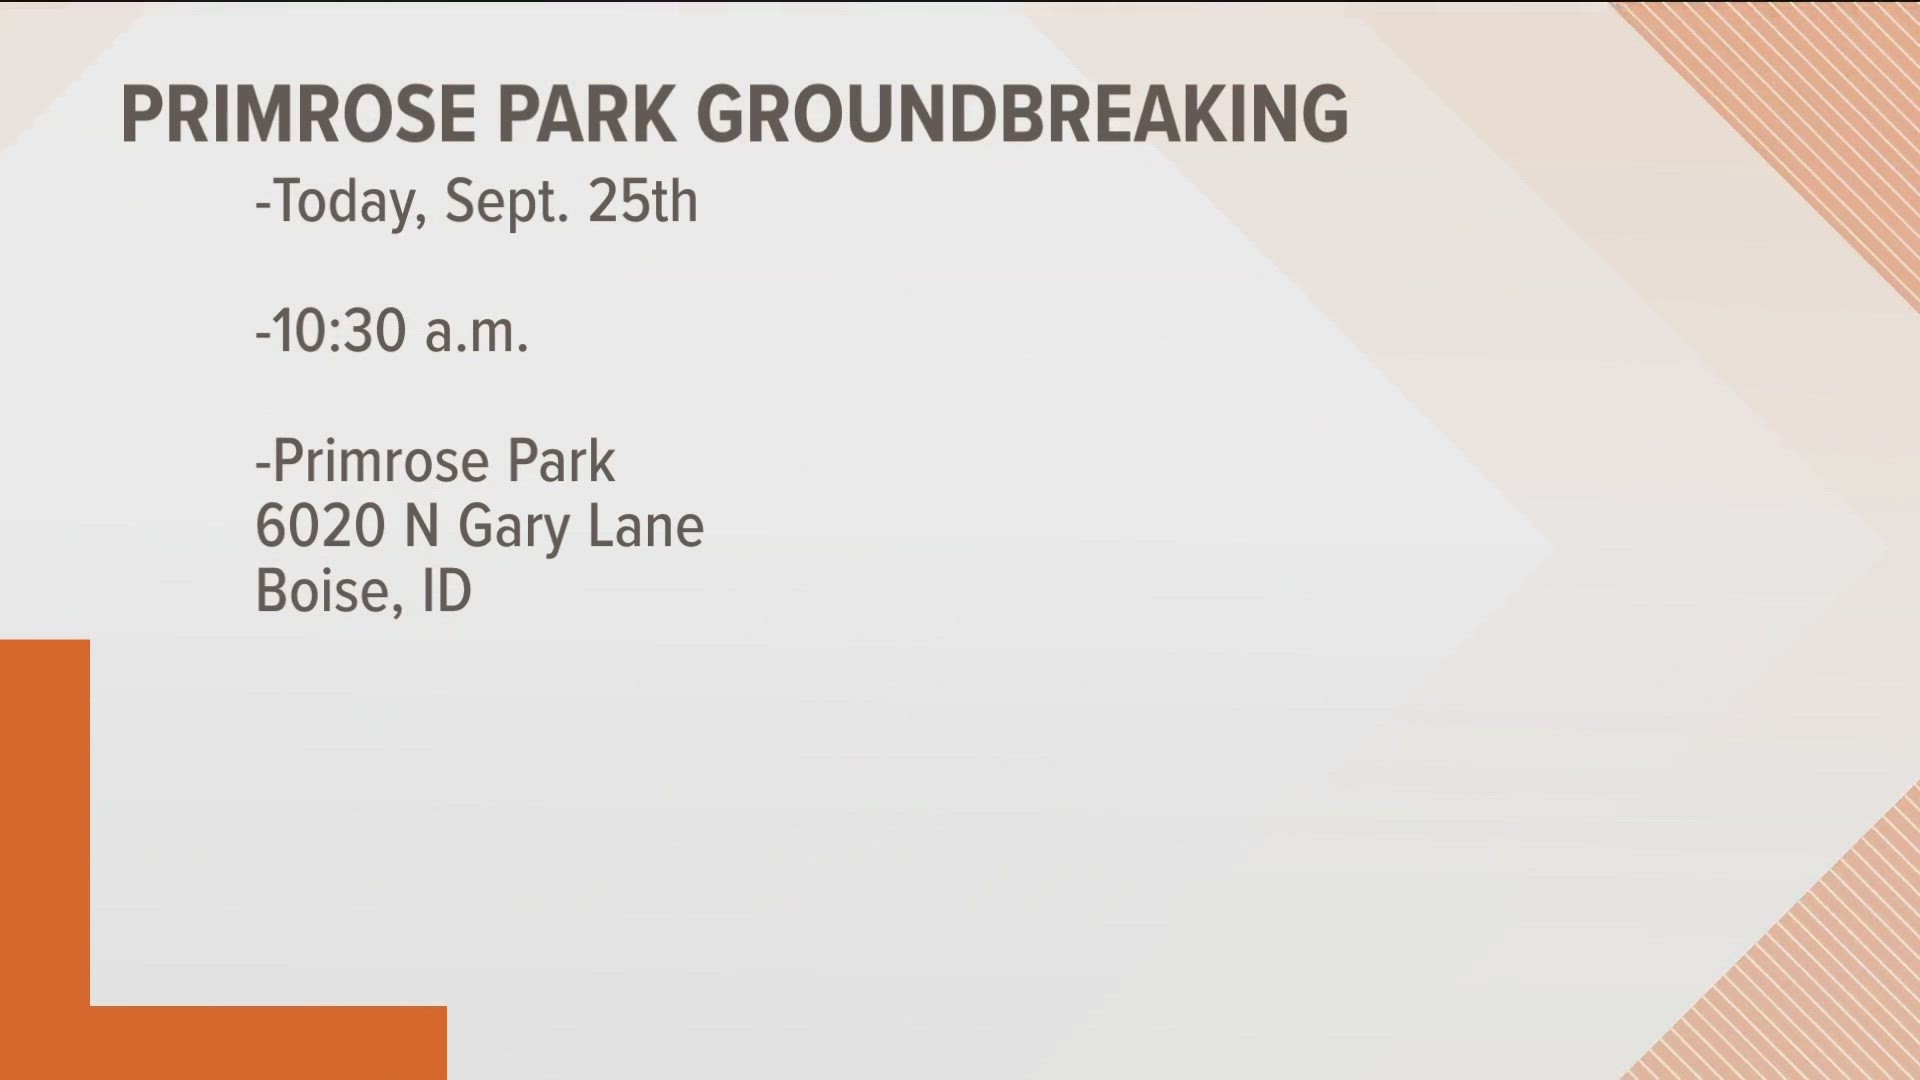 Groundbreaking for Primrose Park happens on Sept. 25 on Gary Lane.